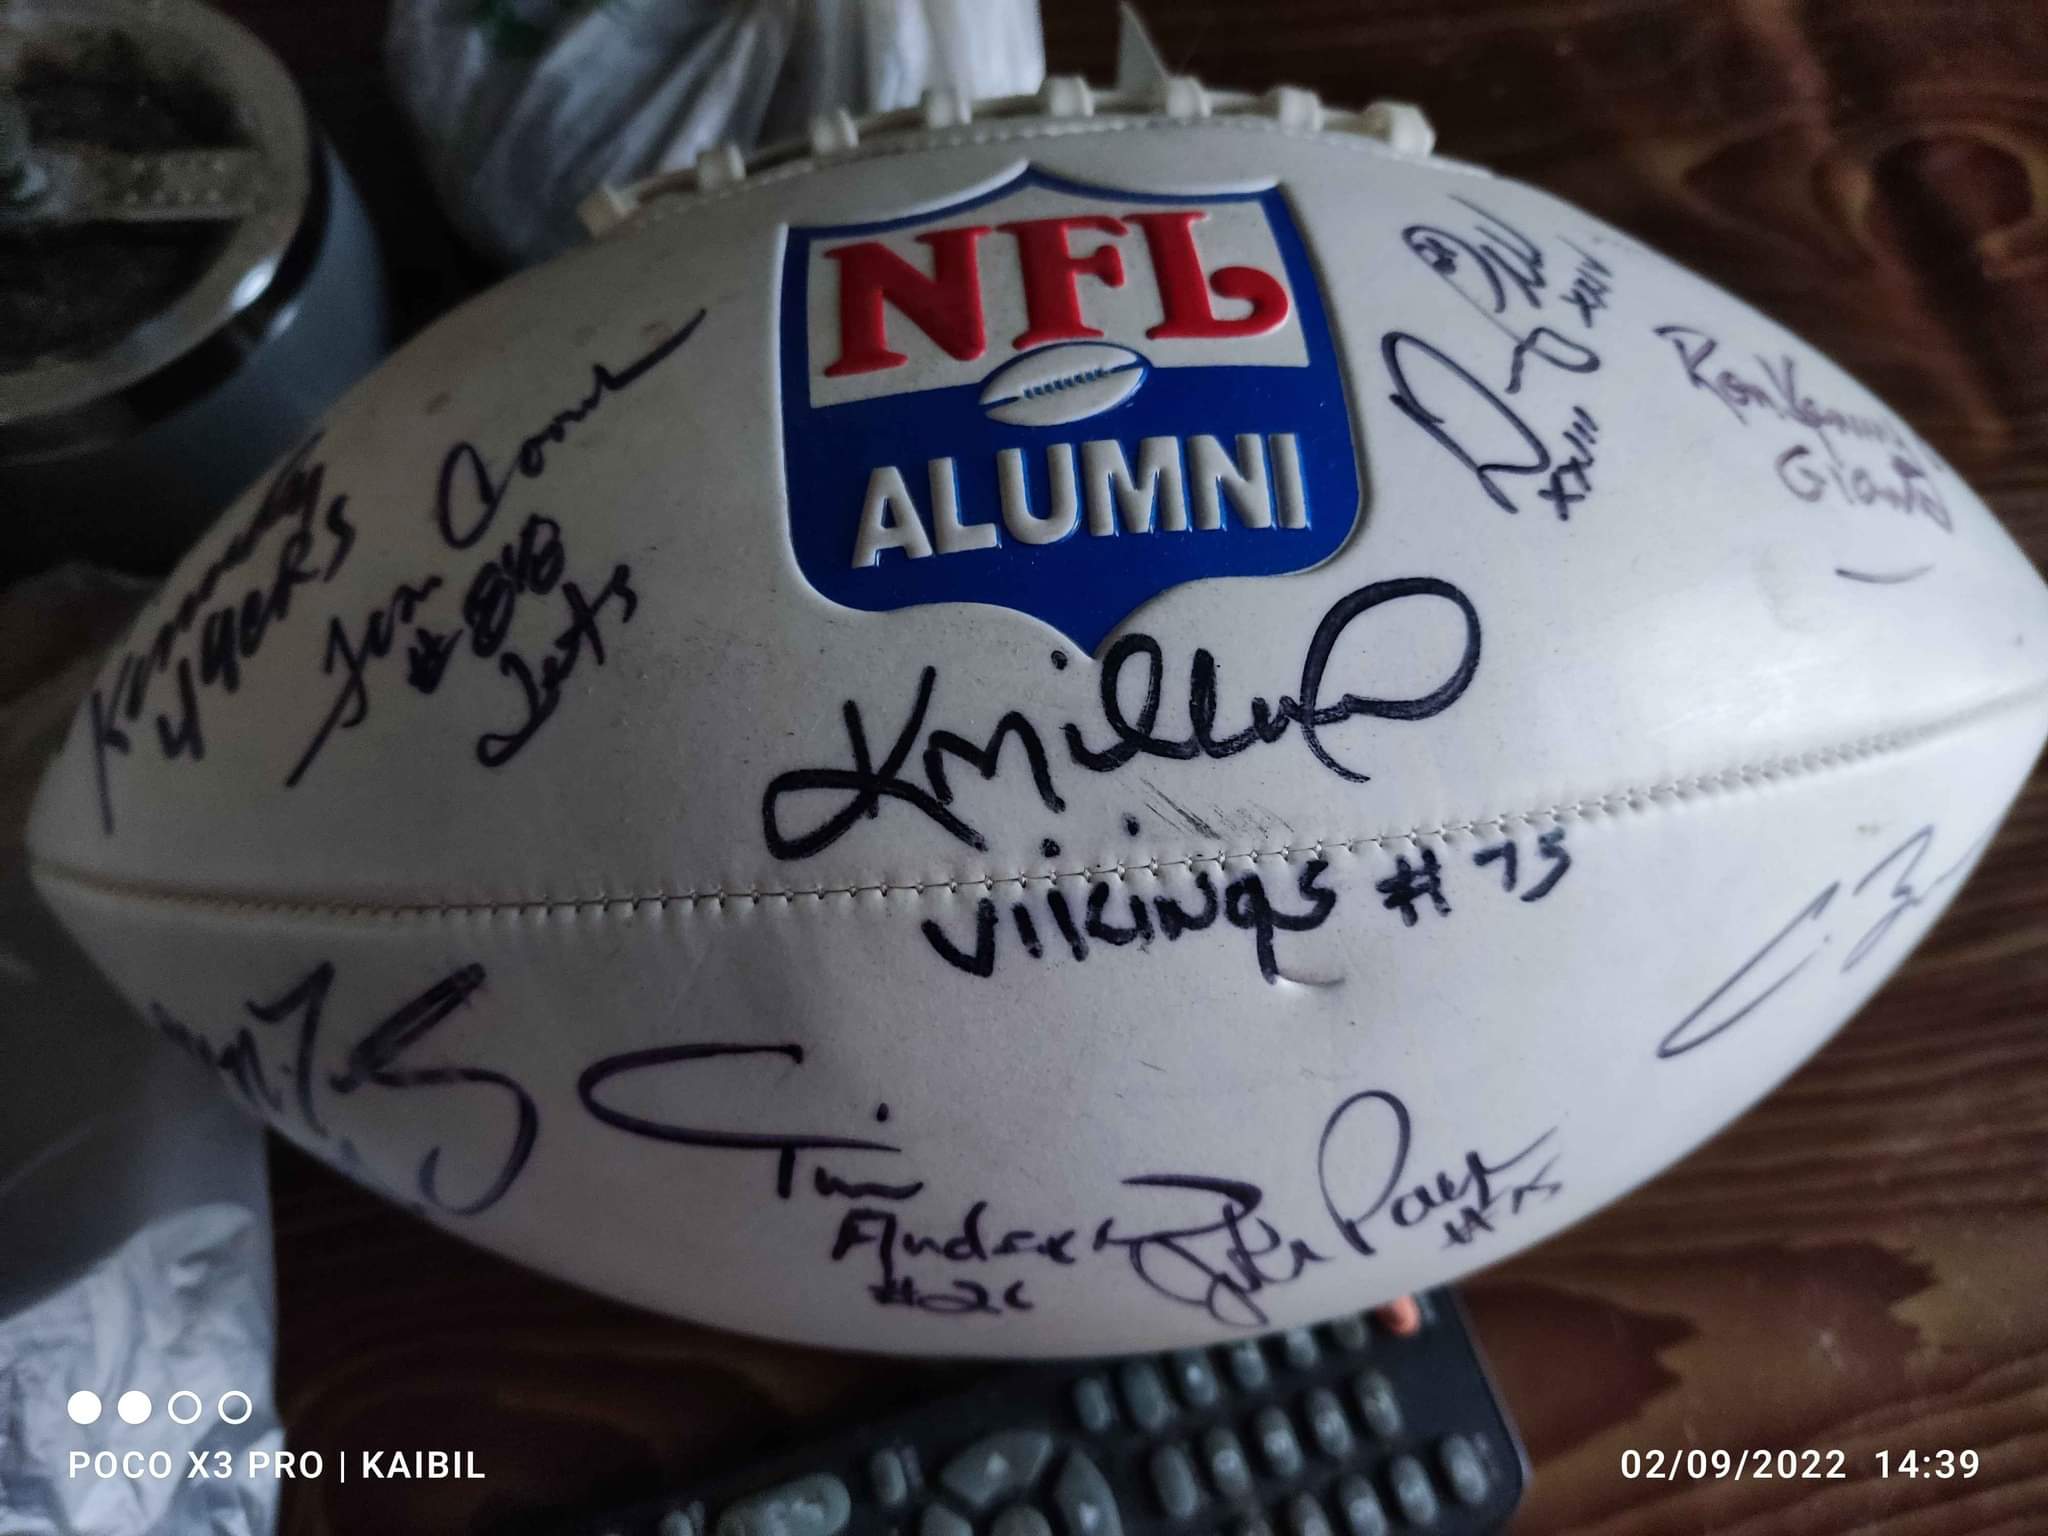 Vendo balón de la NFL ALUMNI autografiado. Entregó en zona 11